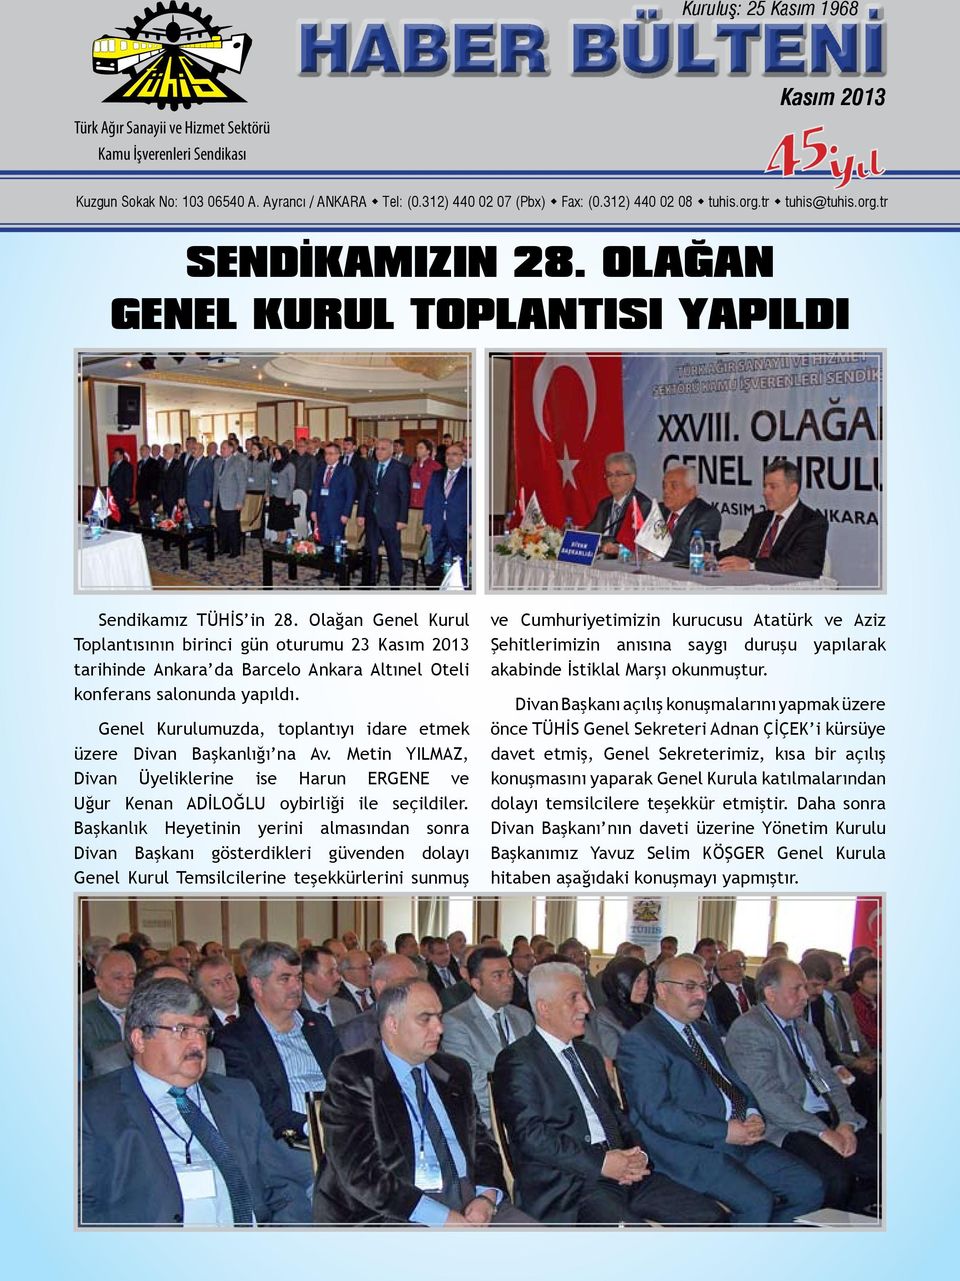 OLAĞAN GENEL KURUL TOPLANTISI YAPILDI Sendikamız TÜHİS in 28.